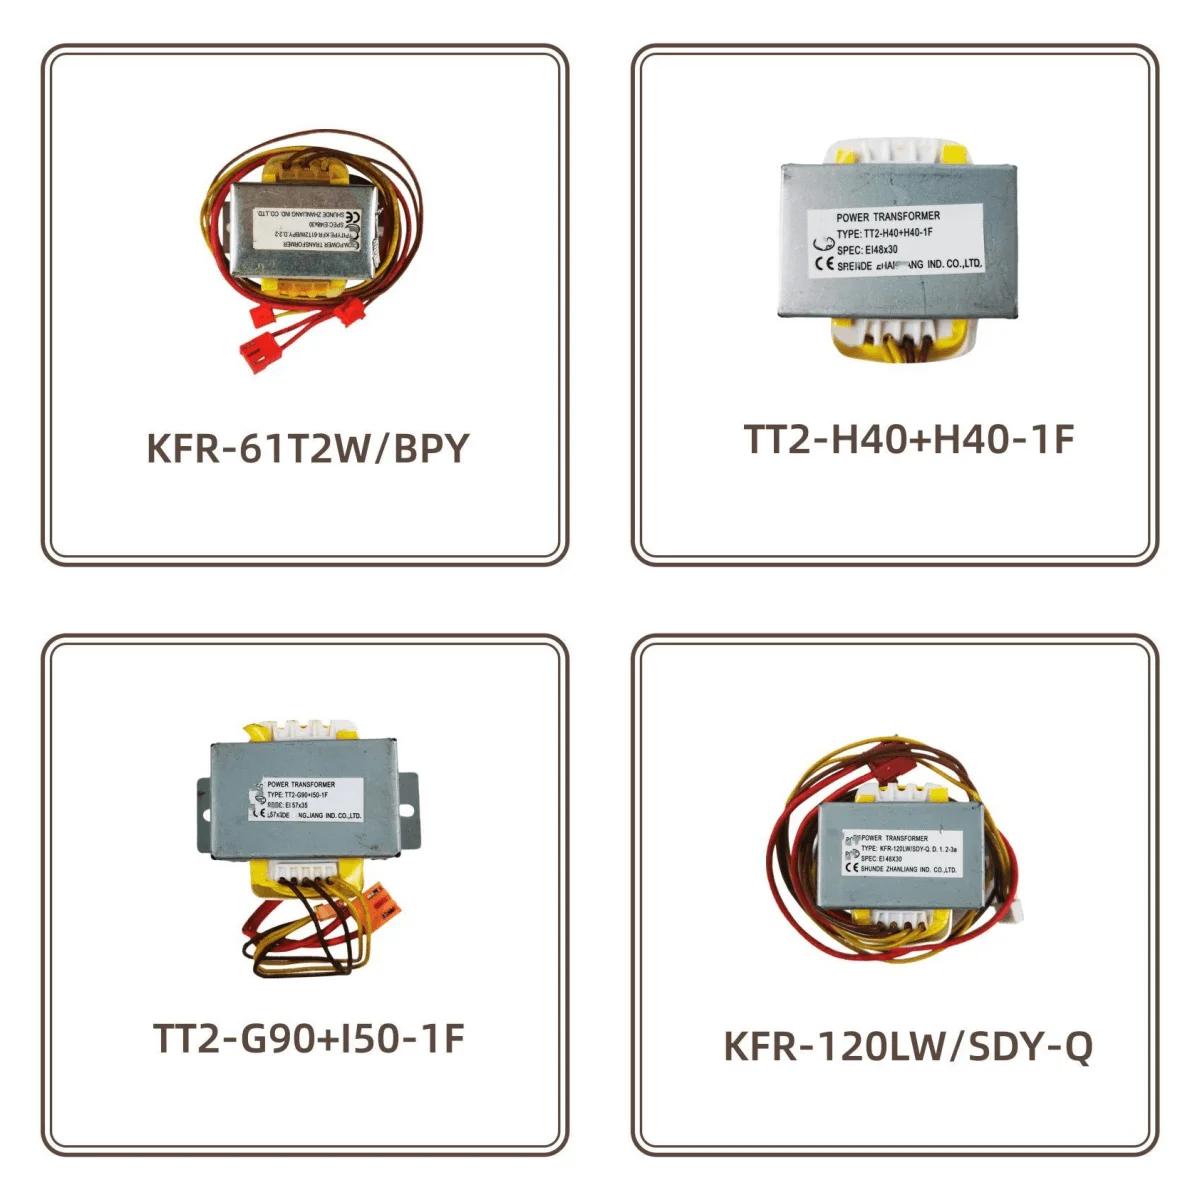 KFR-120LW/ESD.D.8.1-1A/SDY-Q TT2-B35 + D90-8F + D35-1/B20 + D35-1F/H40 + H40-1F/G90 + I50-1F MDV-250(260)W/D KFR-61T